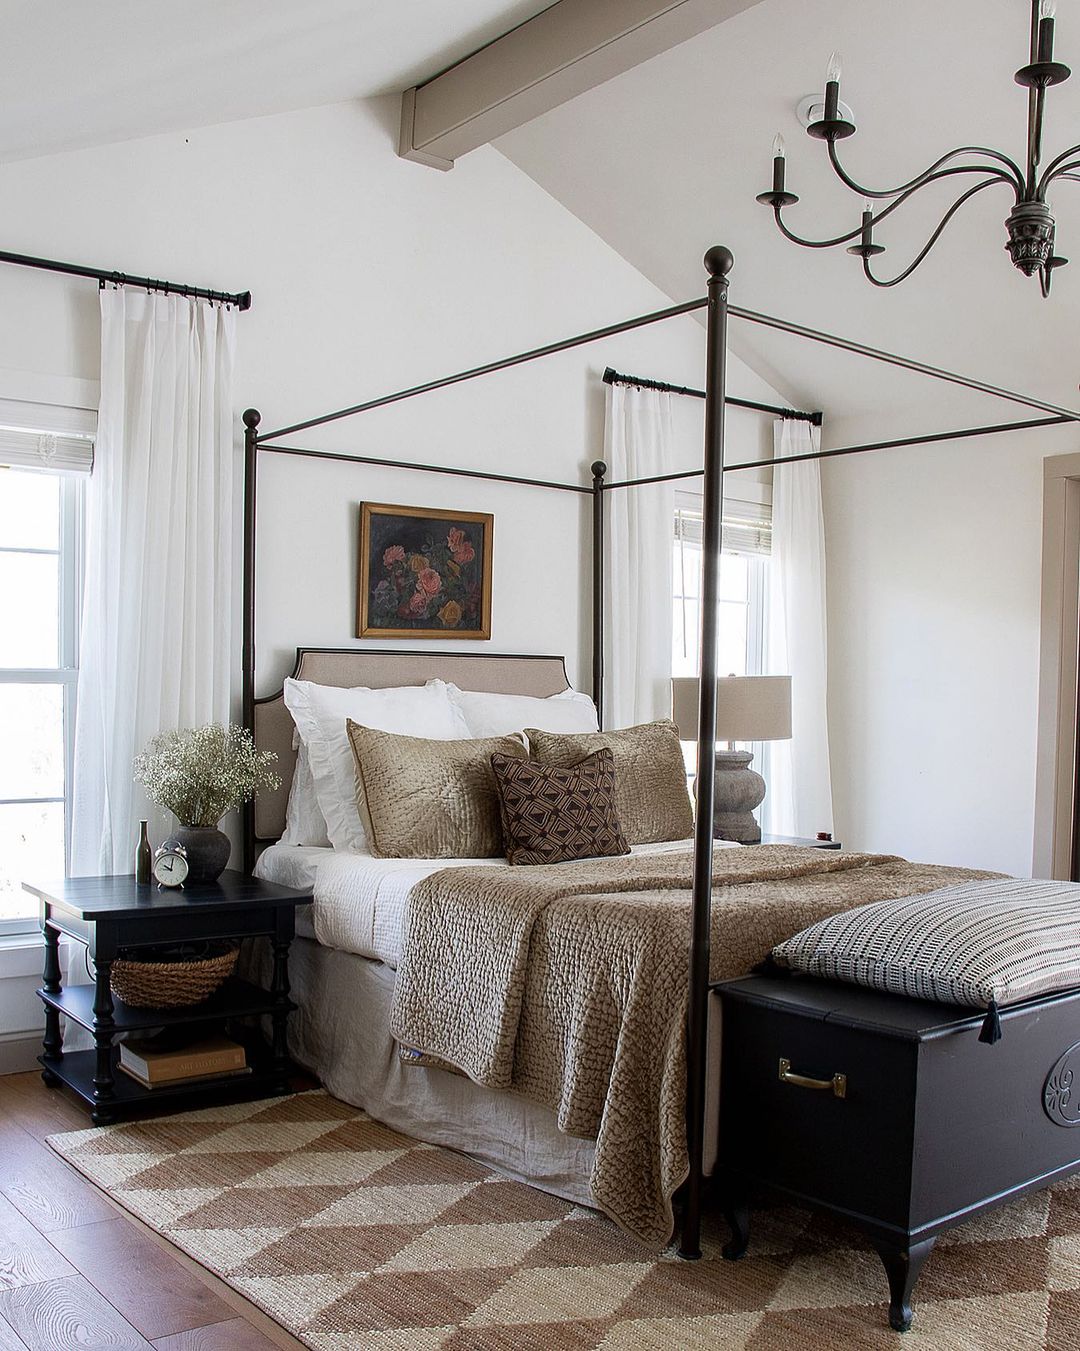 Bedroom Designed by Seeking Lavender Lane. Photo by Instagram user @seekinglavenderlane